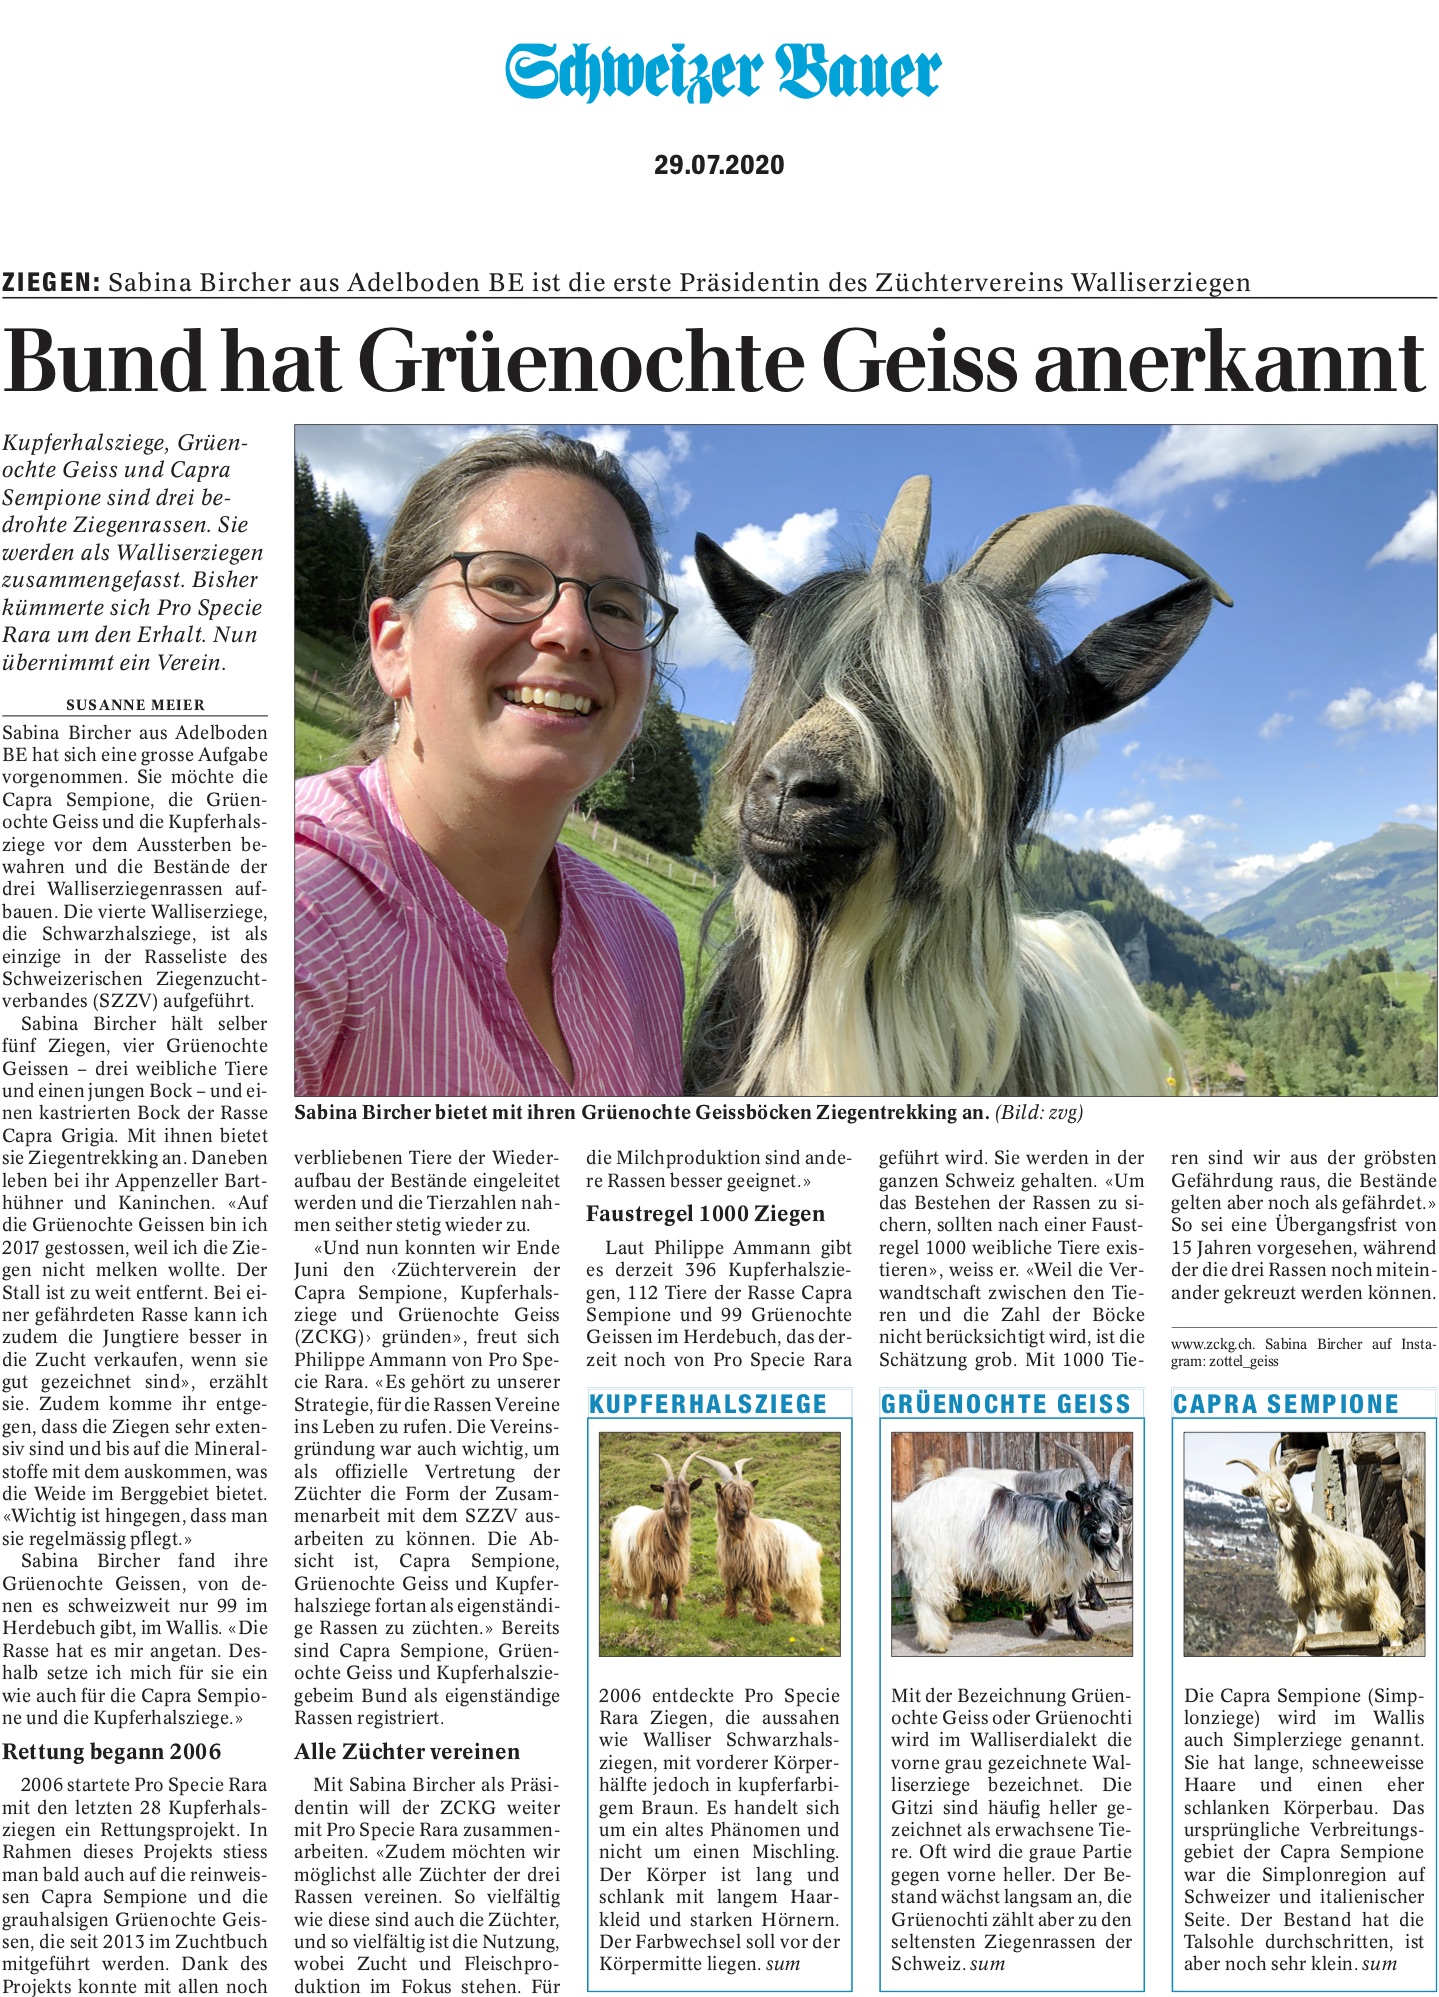 Schweizer Bauer - Bund hat Grenochte Geiss anerkannt_29072020jpg